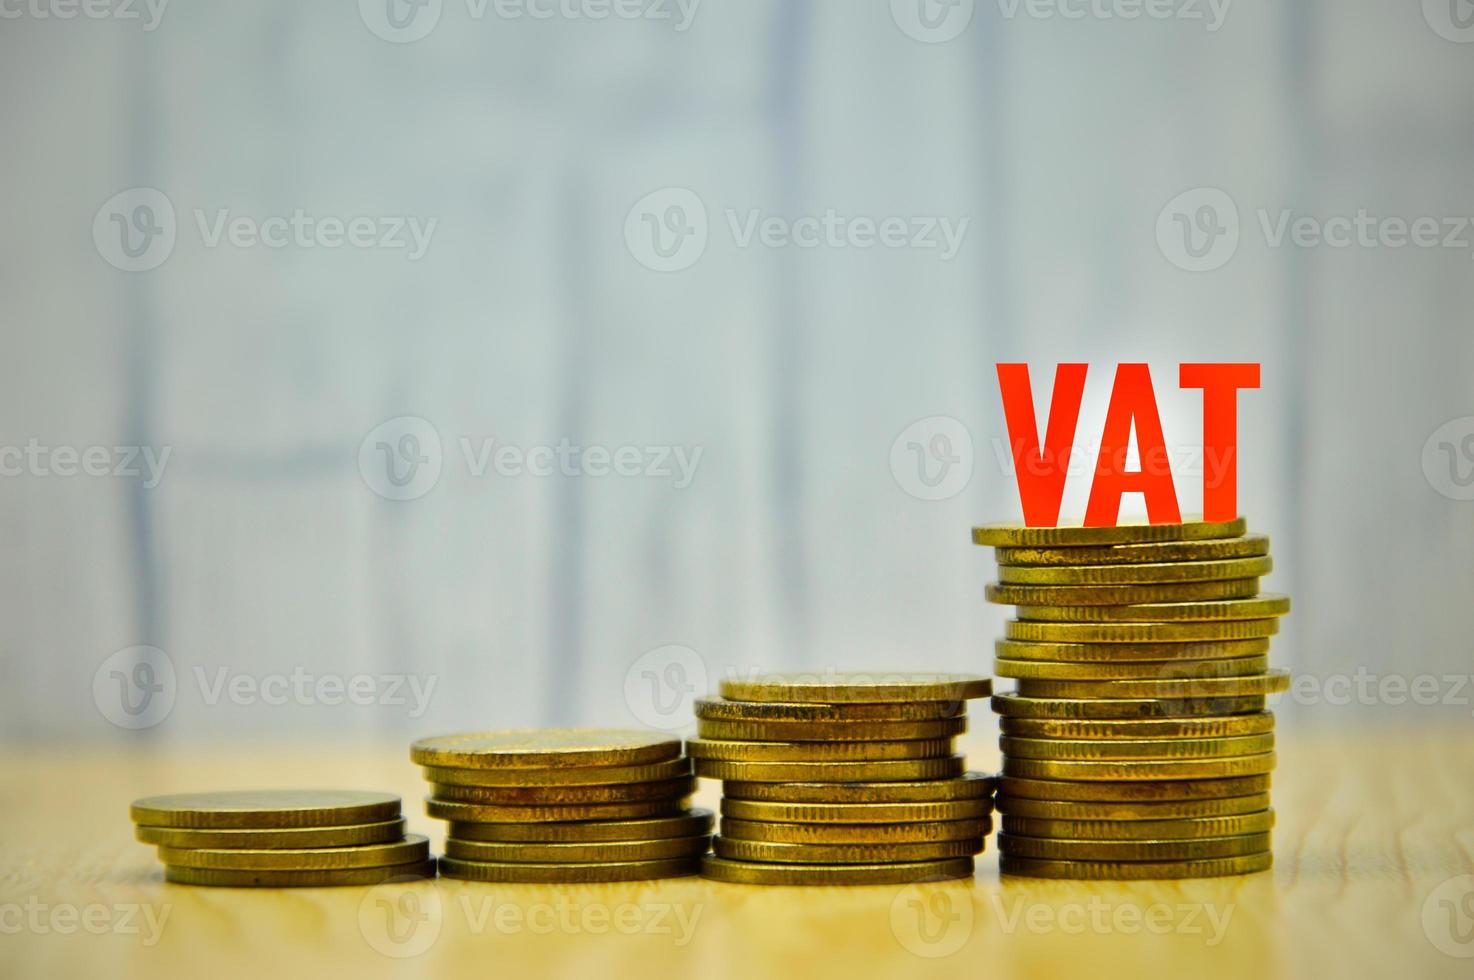 IVA rojo sobre monedas de oro apiladas sobre fondo de madera plantilla de diseño negocio finanzas ingresos bancarios salario foto